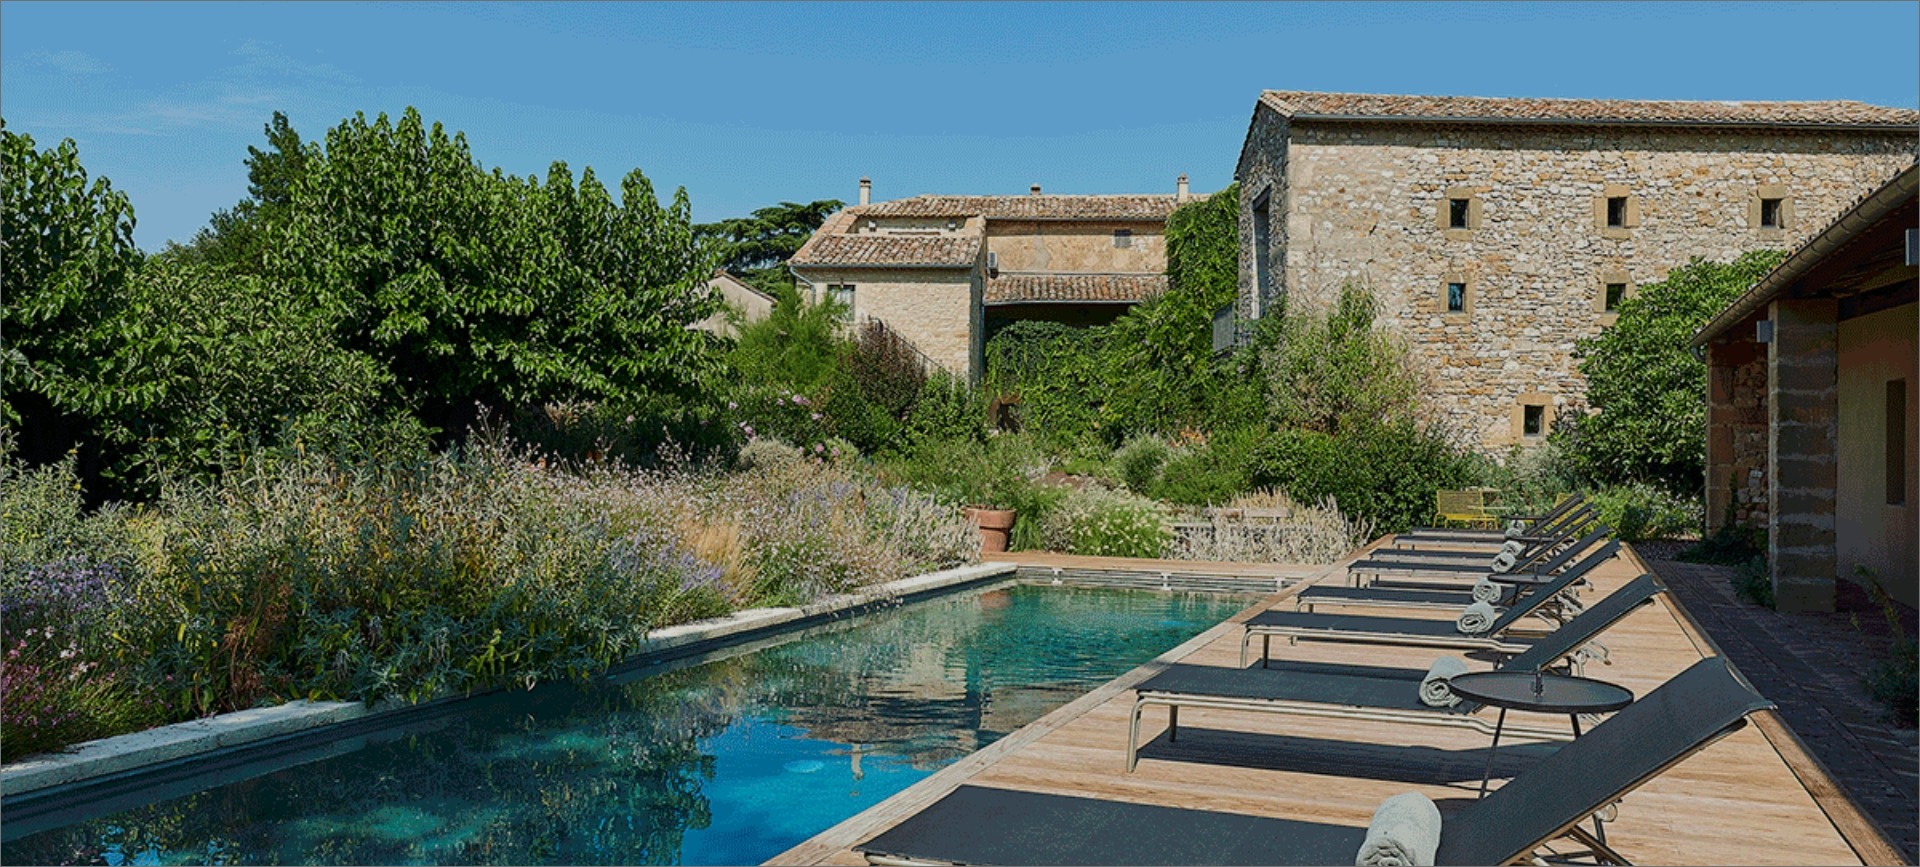 Maison d'Ulysse - Charmante boerderij in de Provence